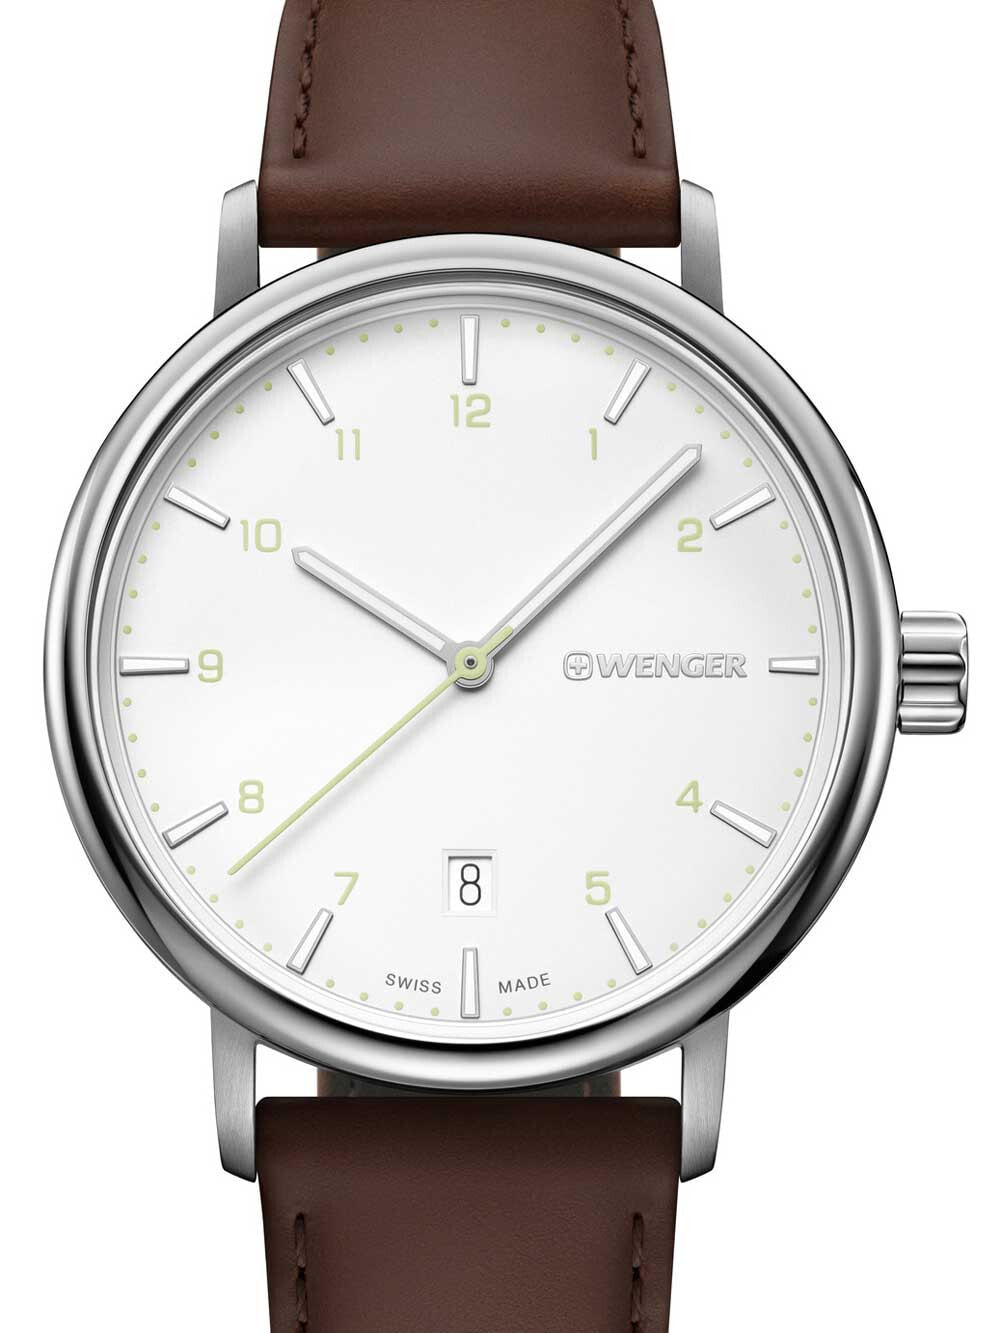 Мужские наручные часы с коричневым кожаным ремешком  Wenger 01.1731.117 Urban Classic mens 40mm 10 ATM